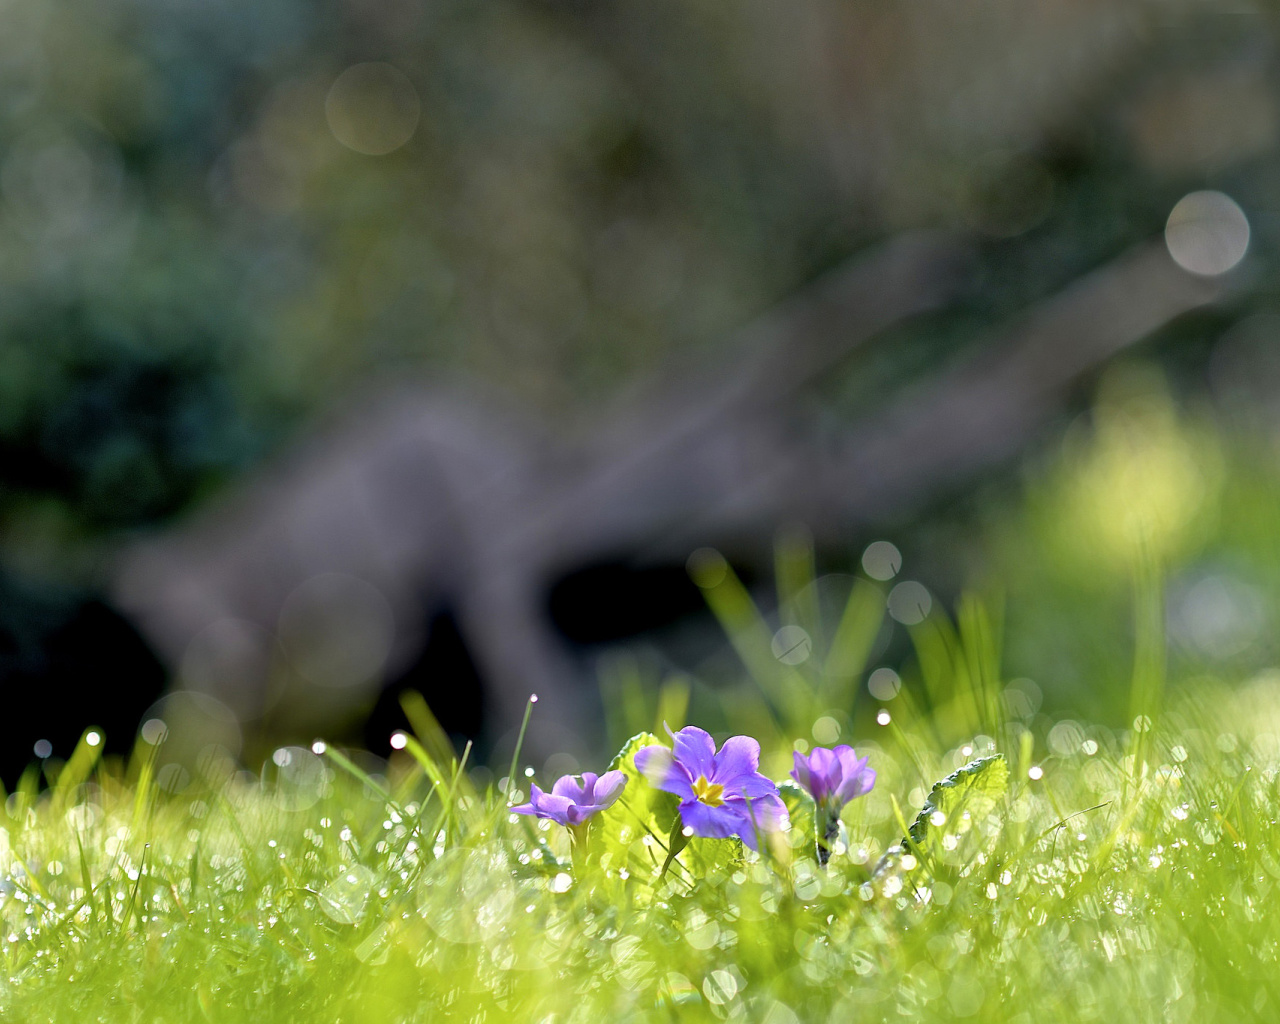 Grass and lilac flower screenshot #1 1280x1024